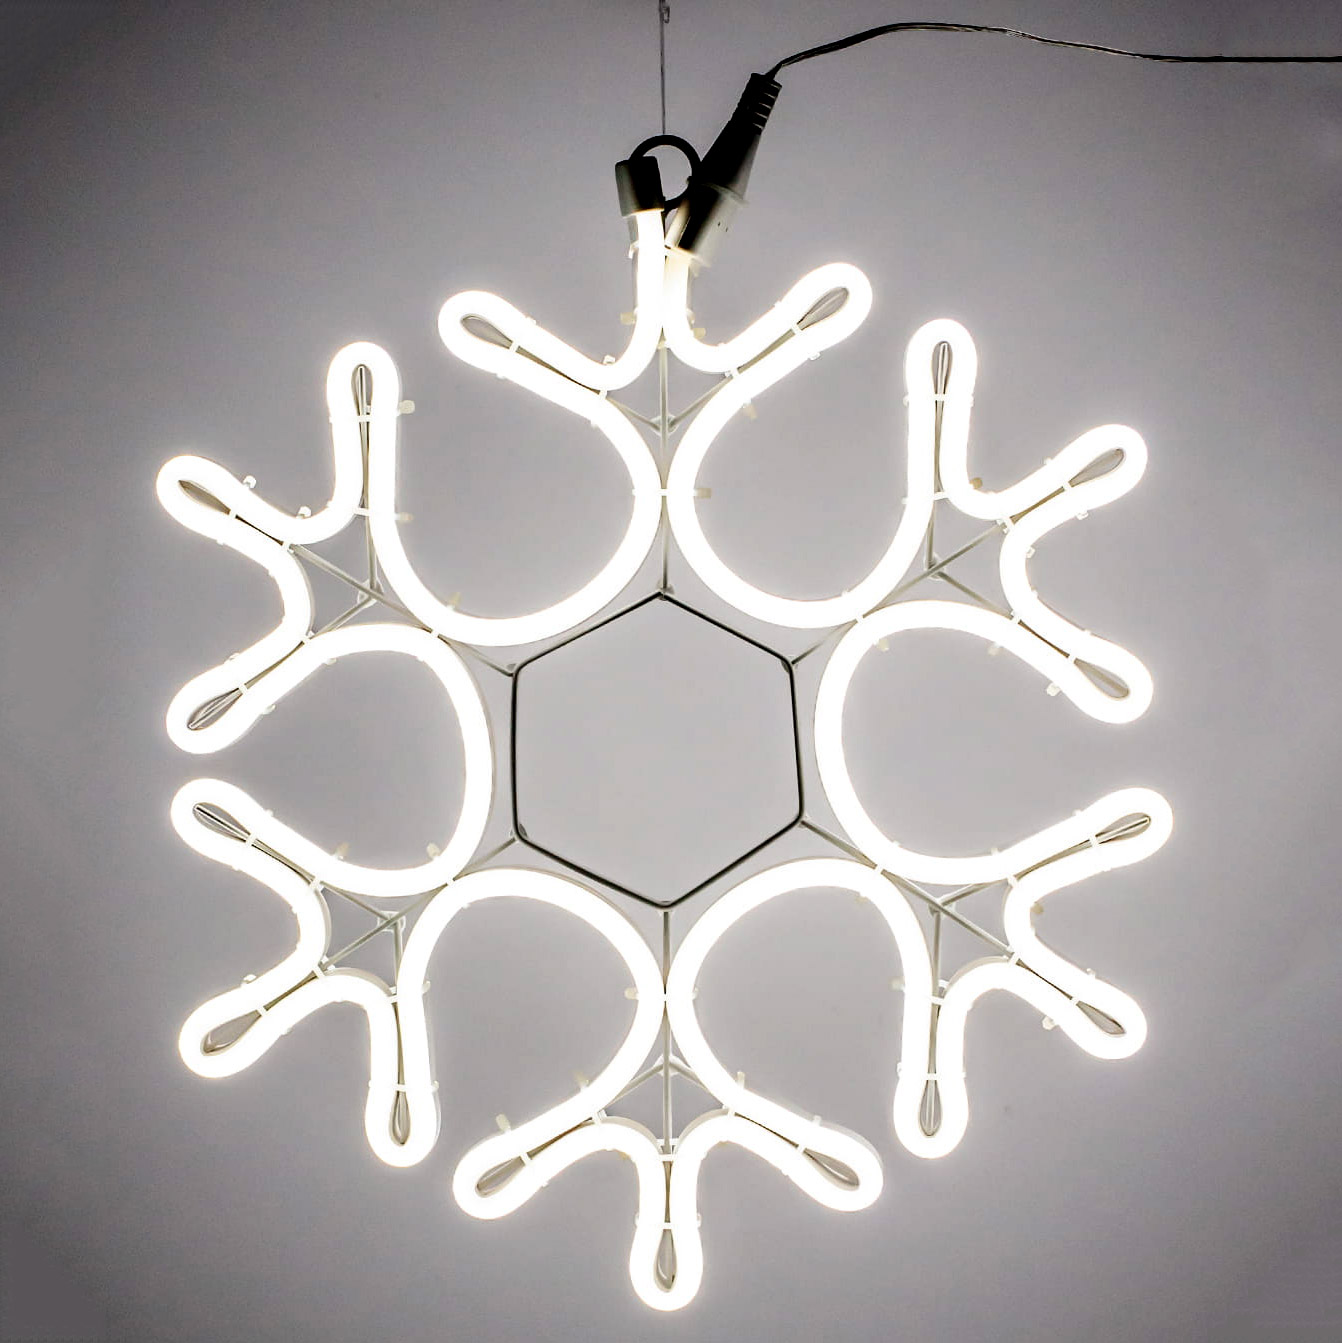 Снежинка декоративная светящаяся Kaemingk 288 LED, цвет холодный белый